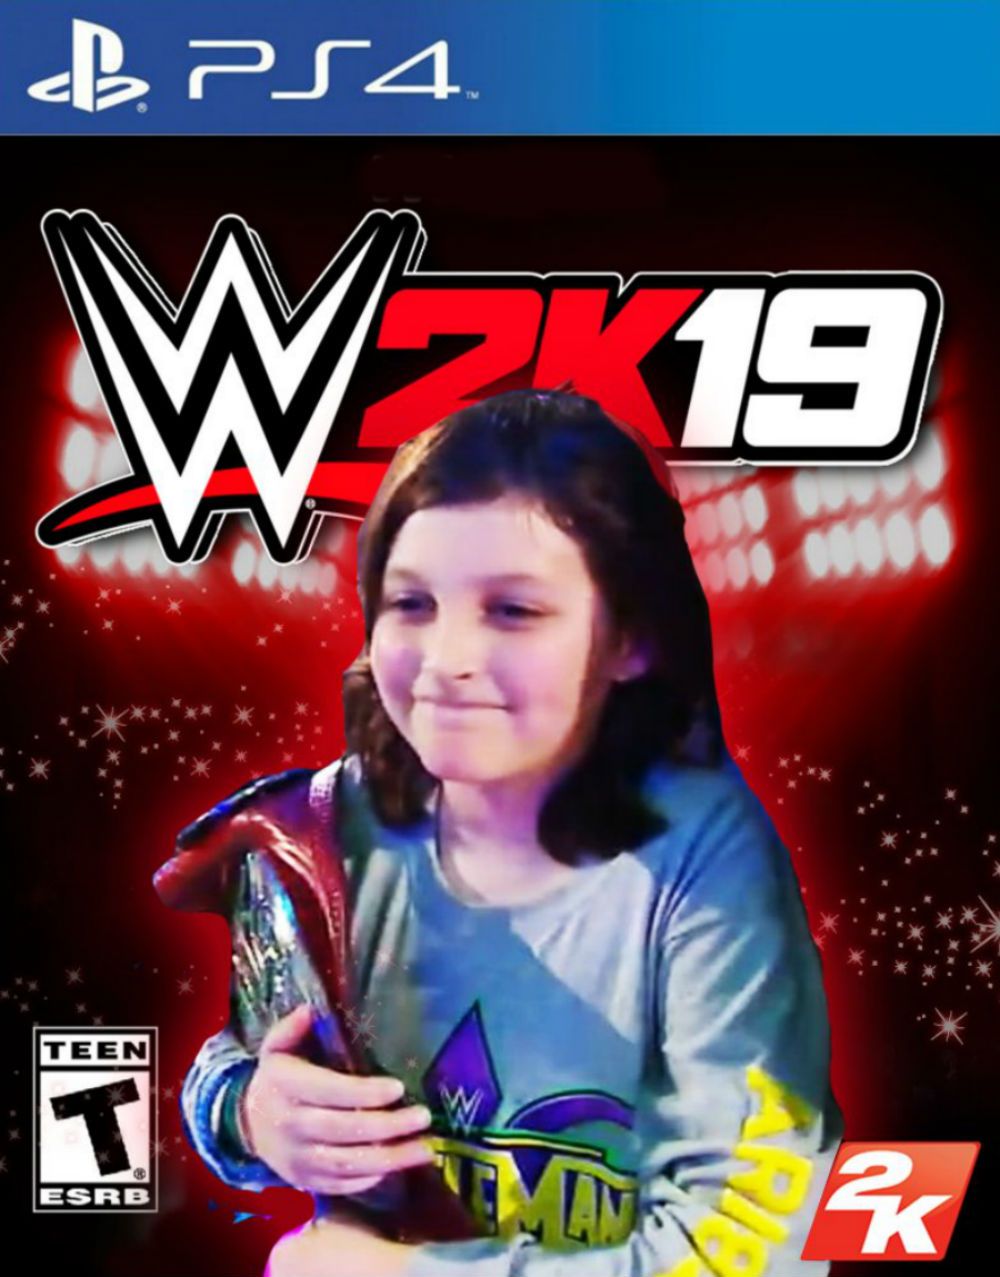 WWE Nicholas WWE 2K